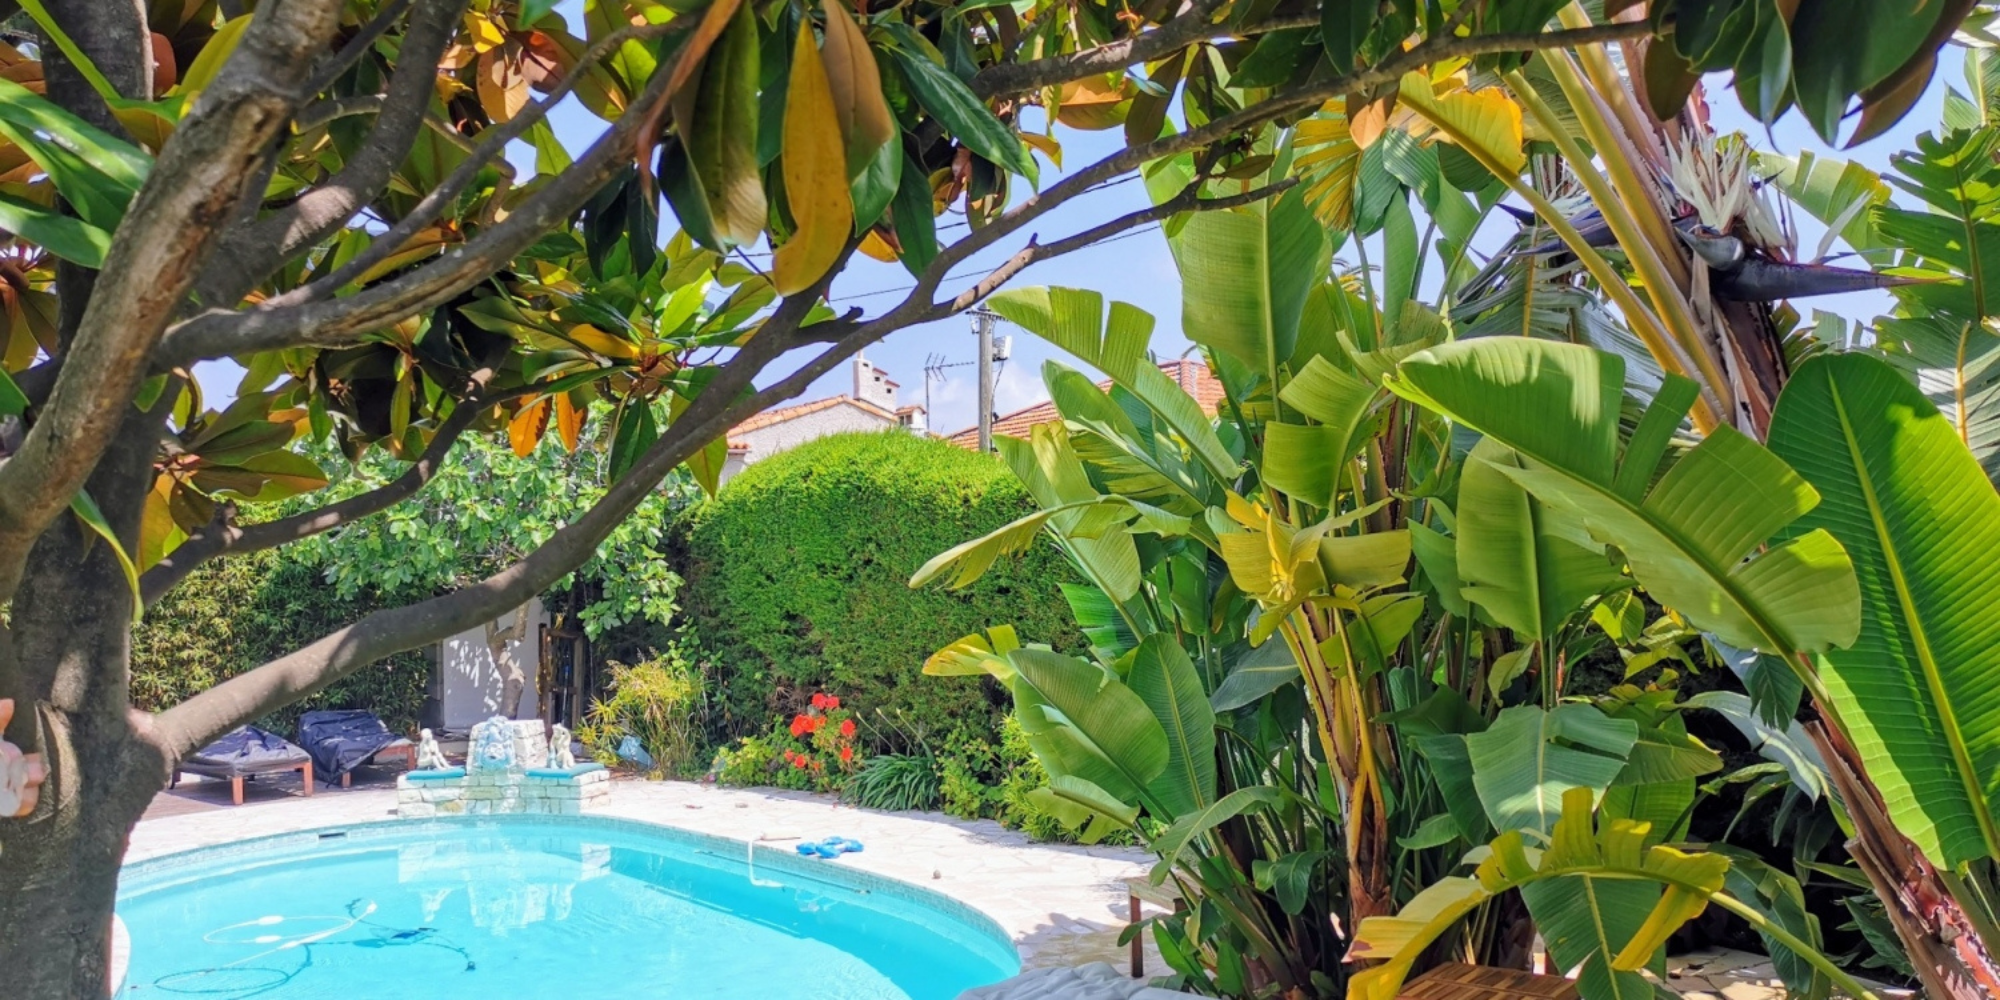 Villa with Tropical Garden